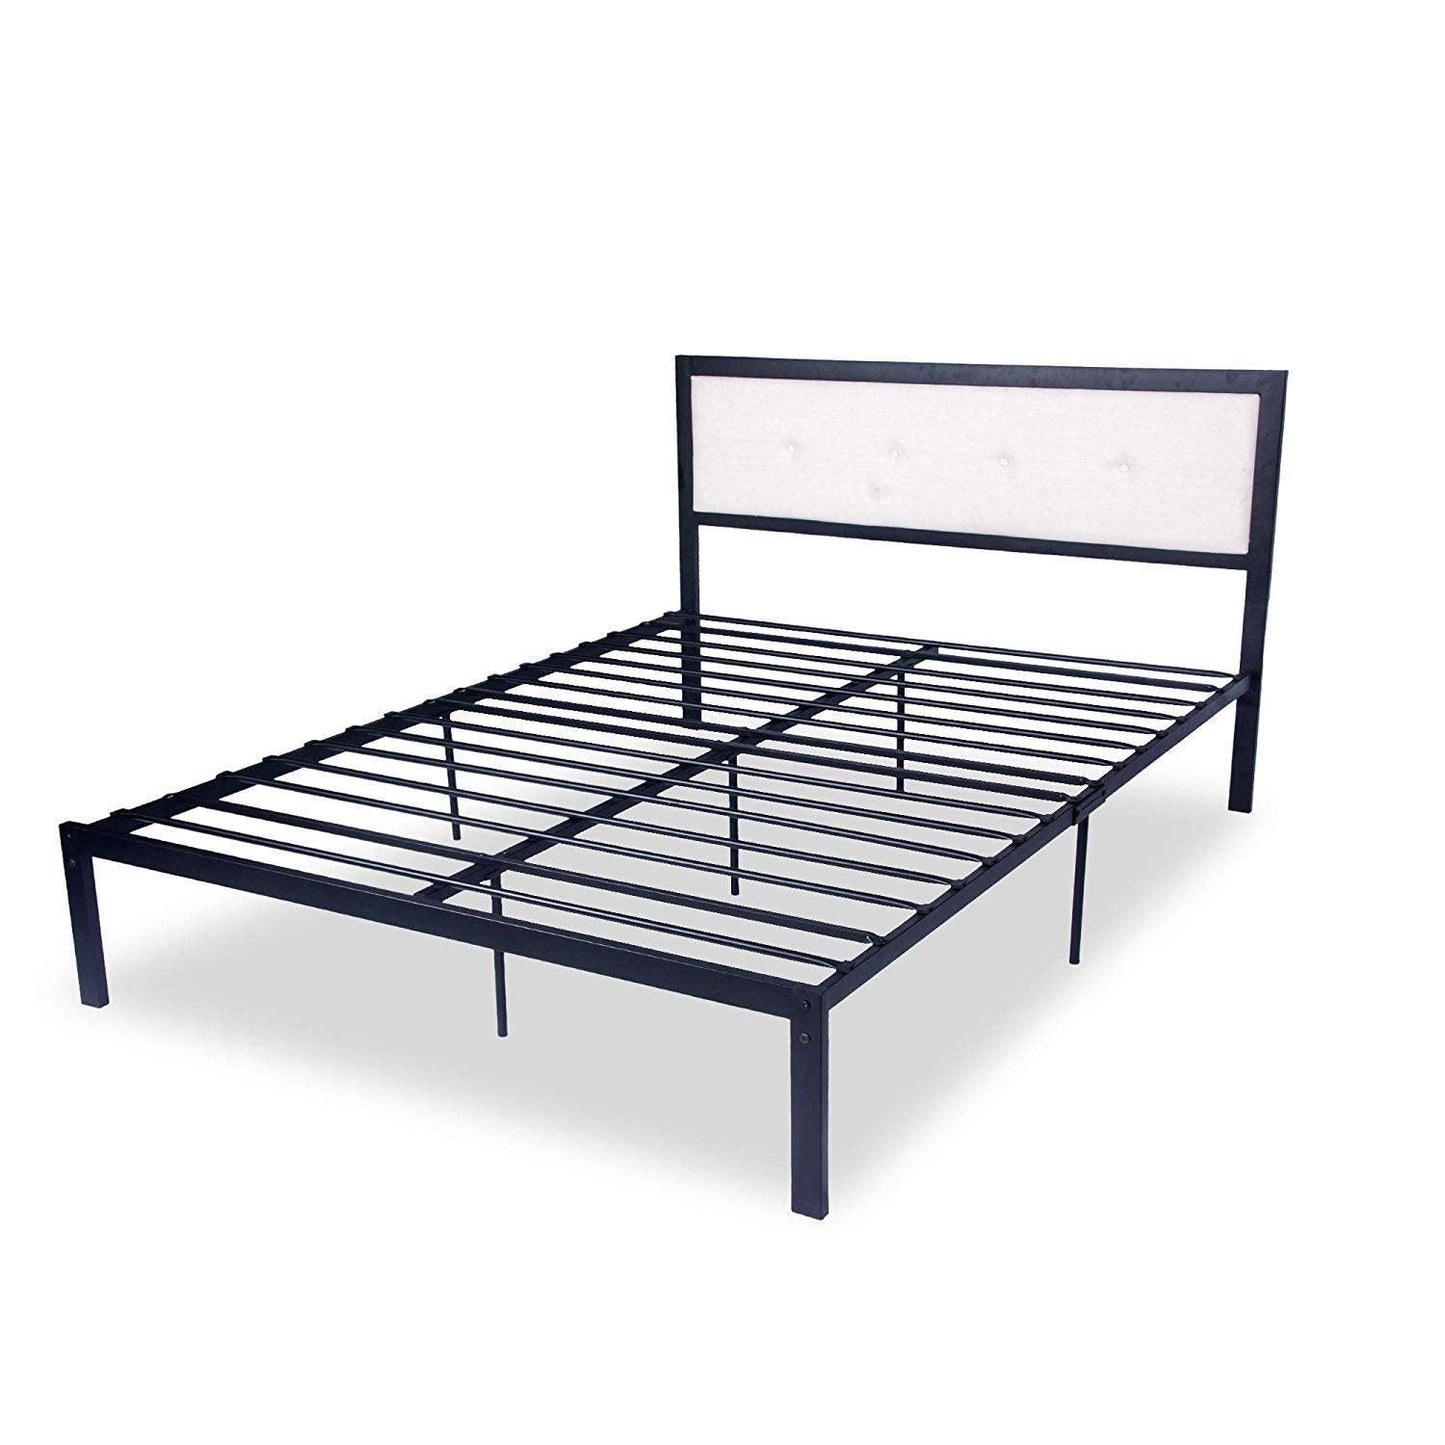 54" Modern Full Size Platform Bed with Black Metal Frame, Beige Headboard - FurniFindUSA